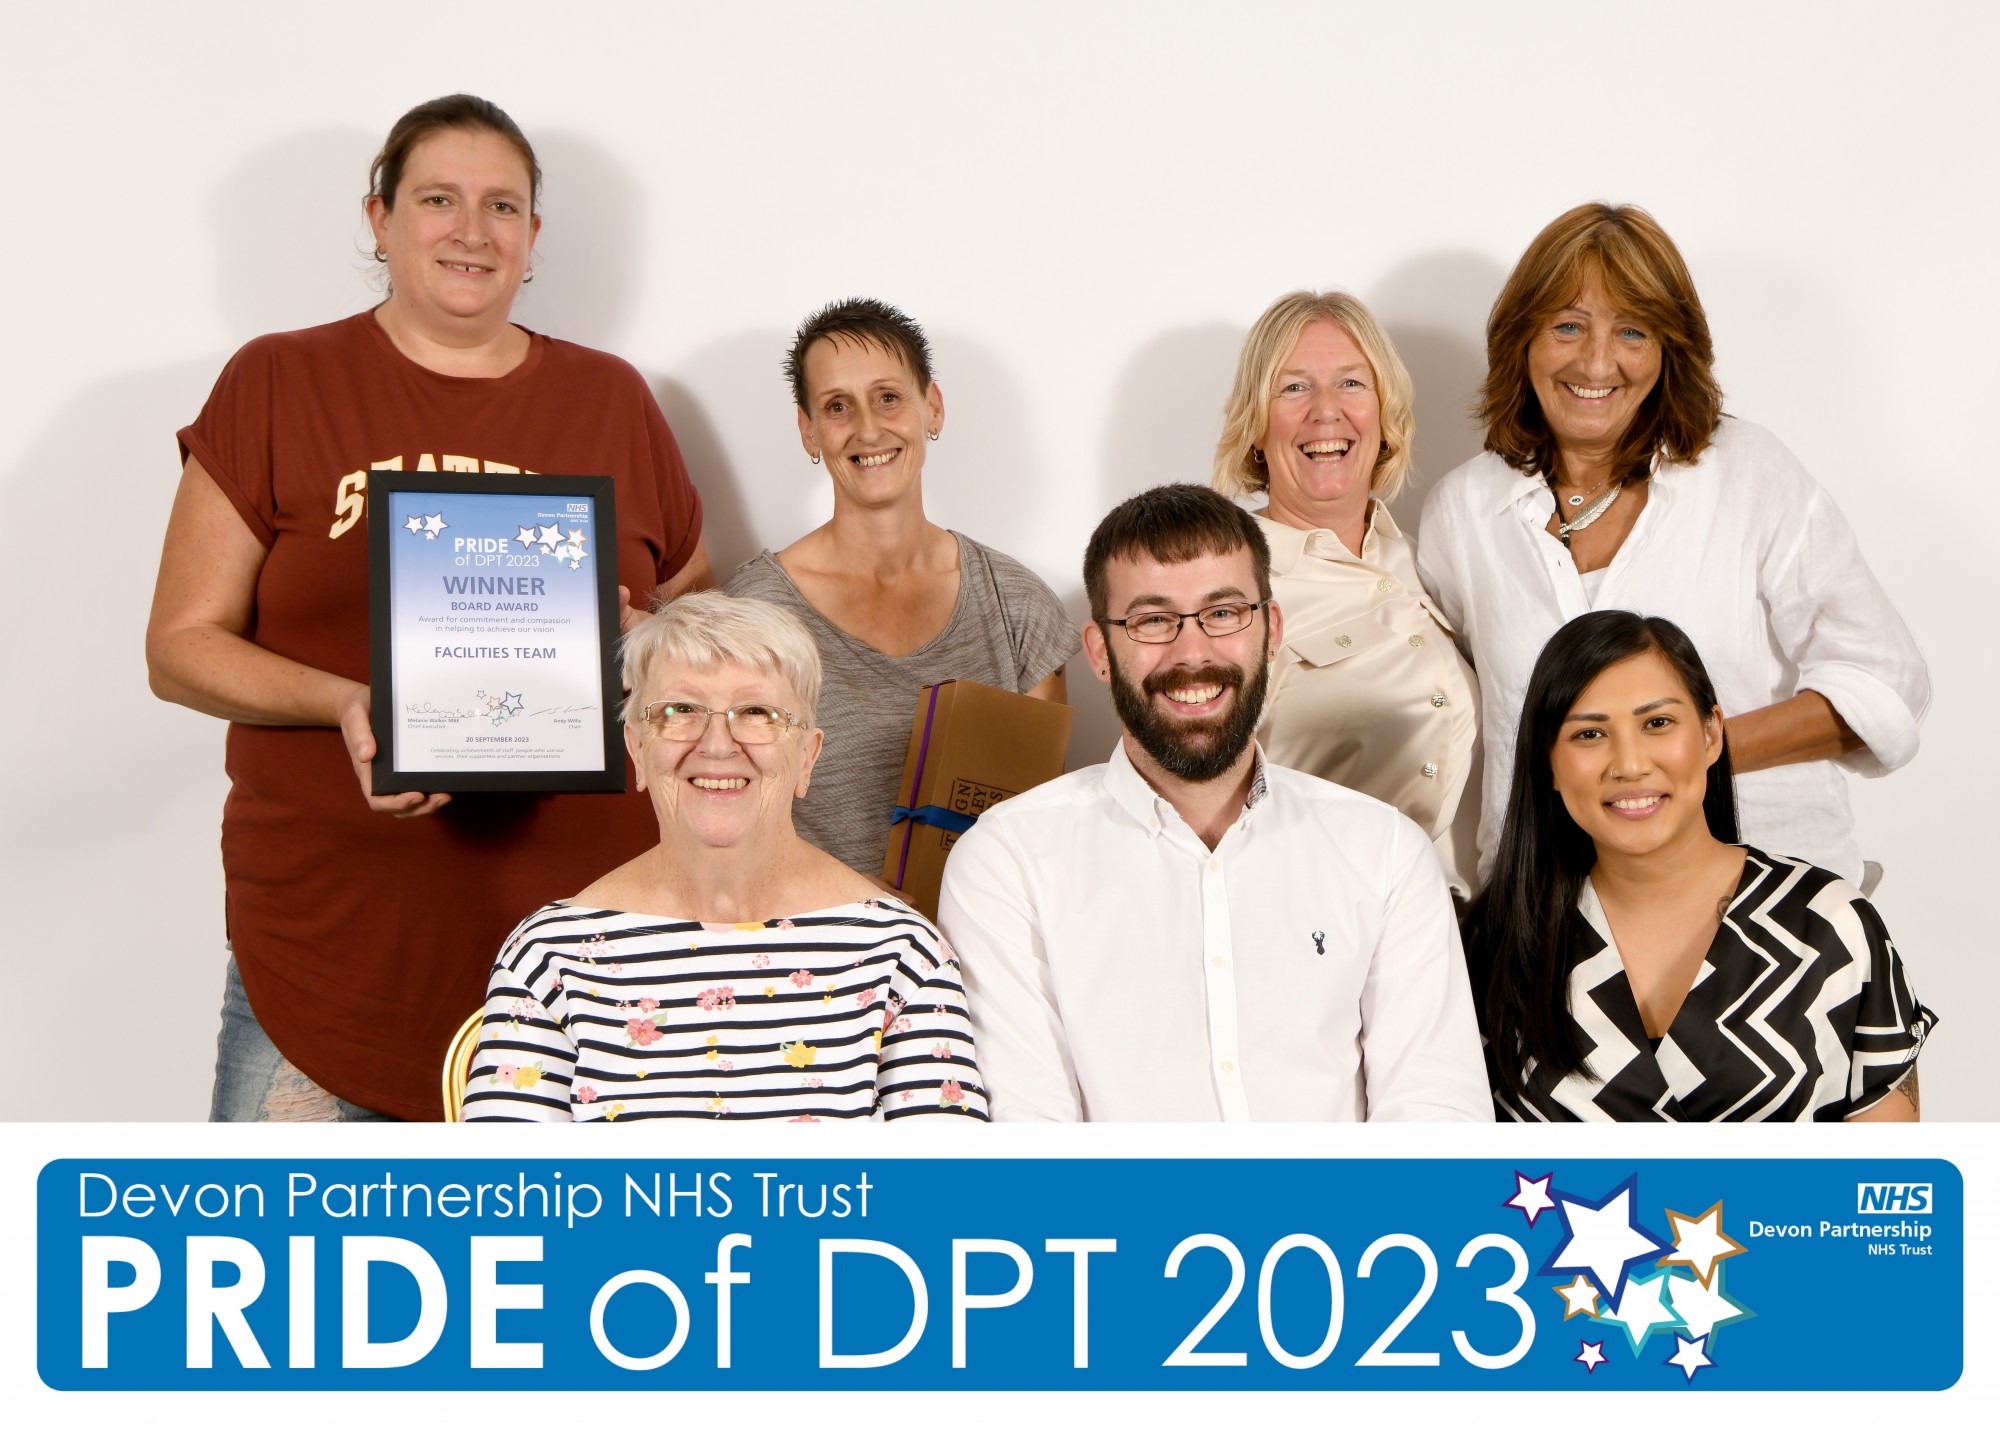 Spotlight On the Facilities Team – Pride of DPT Board Award winner